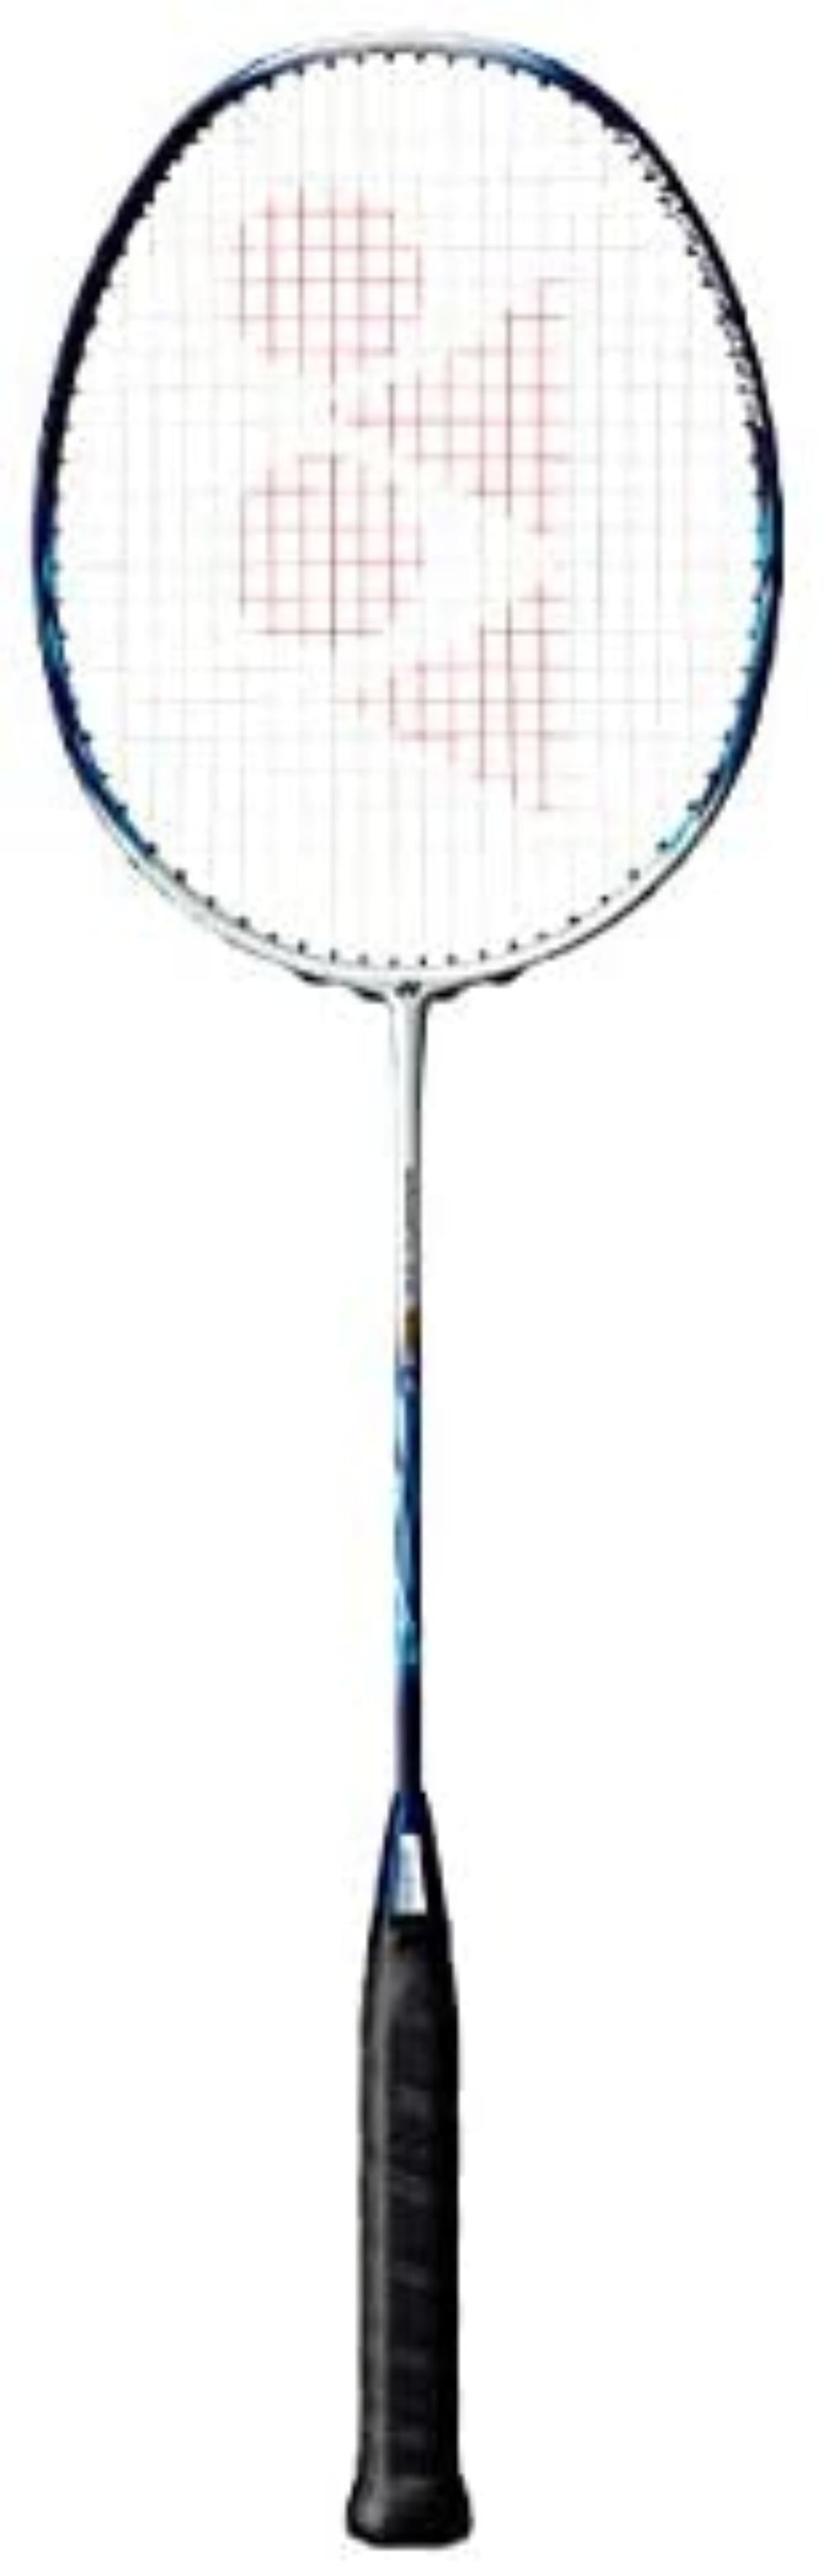 5UG5 Black/Green Yonex Nanoflare 001 Clear Badminton Pre-Strung Racquet 